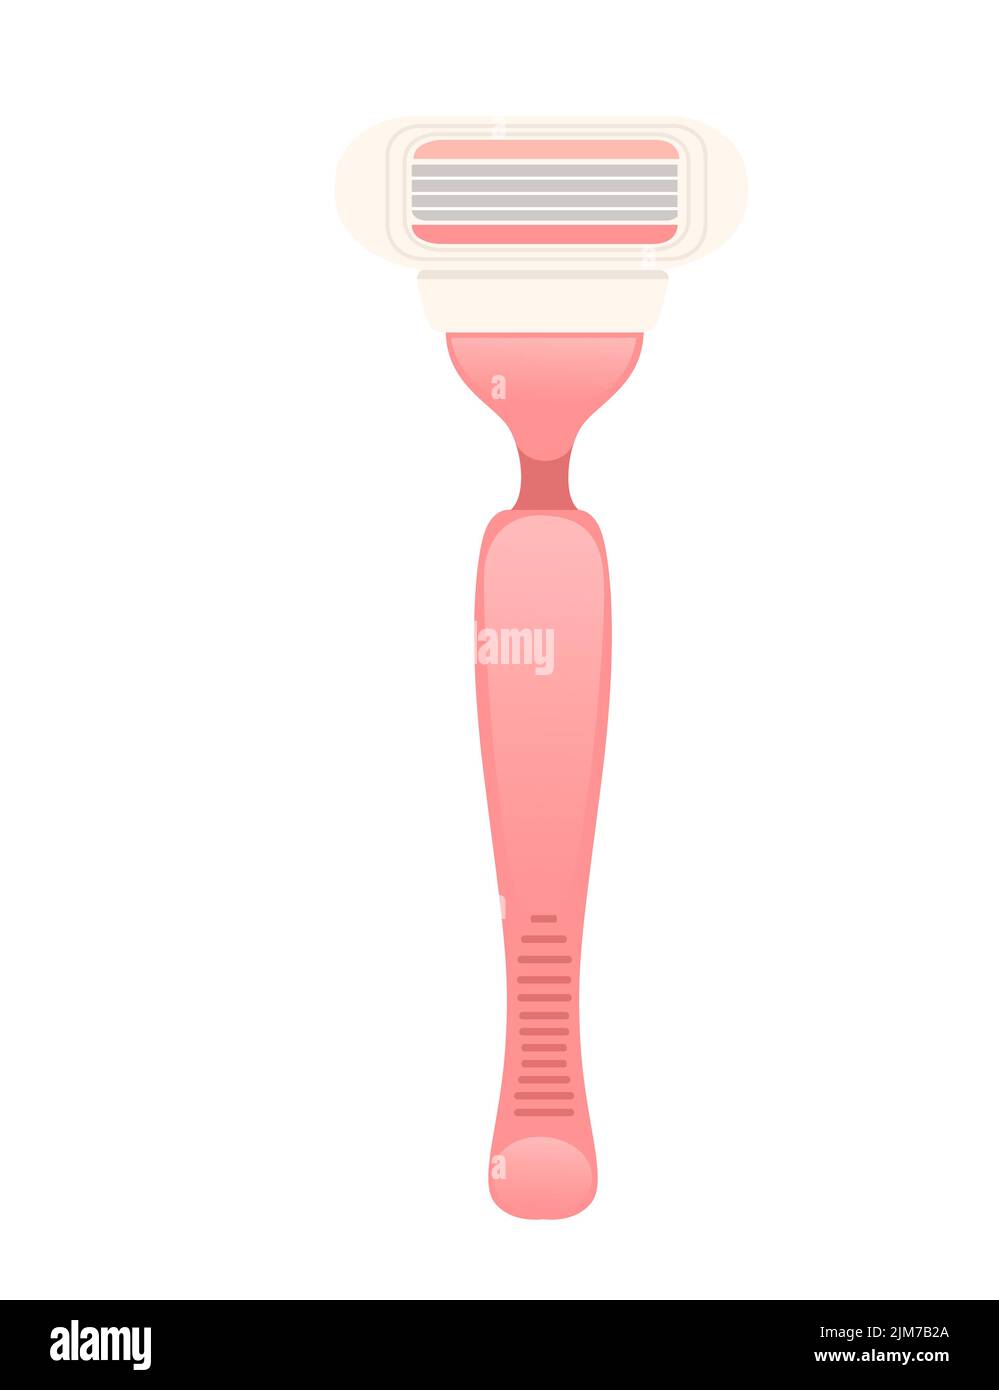 Afeitadora eléctrica sin cable rosa ilustración vectorial aislada sobre fondo blanco. Ilustración del Vector